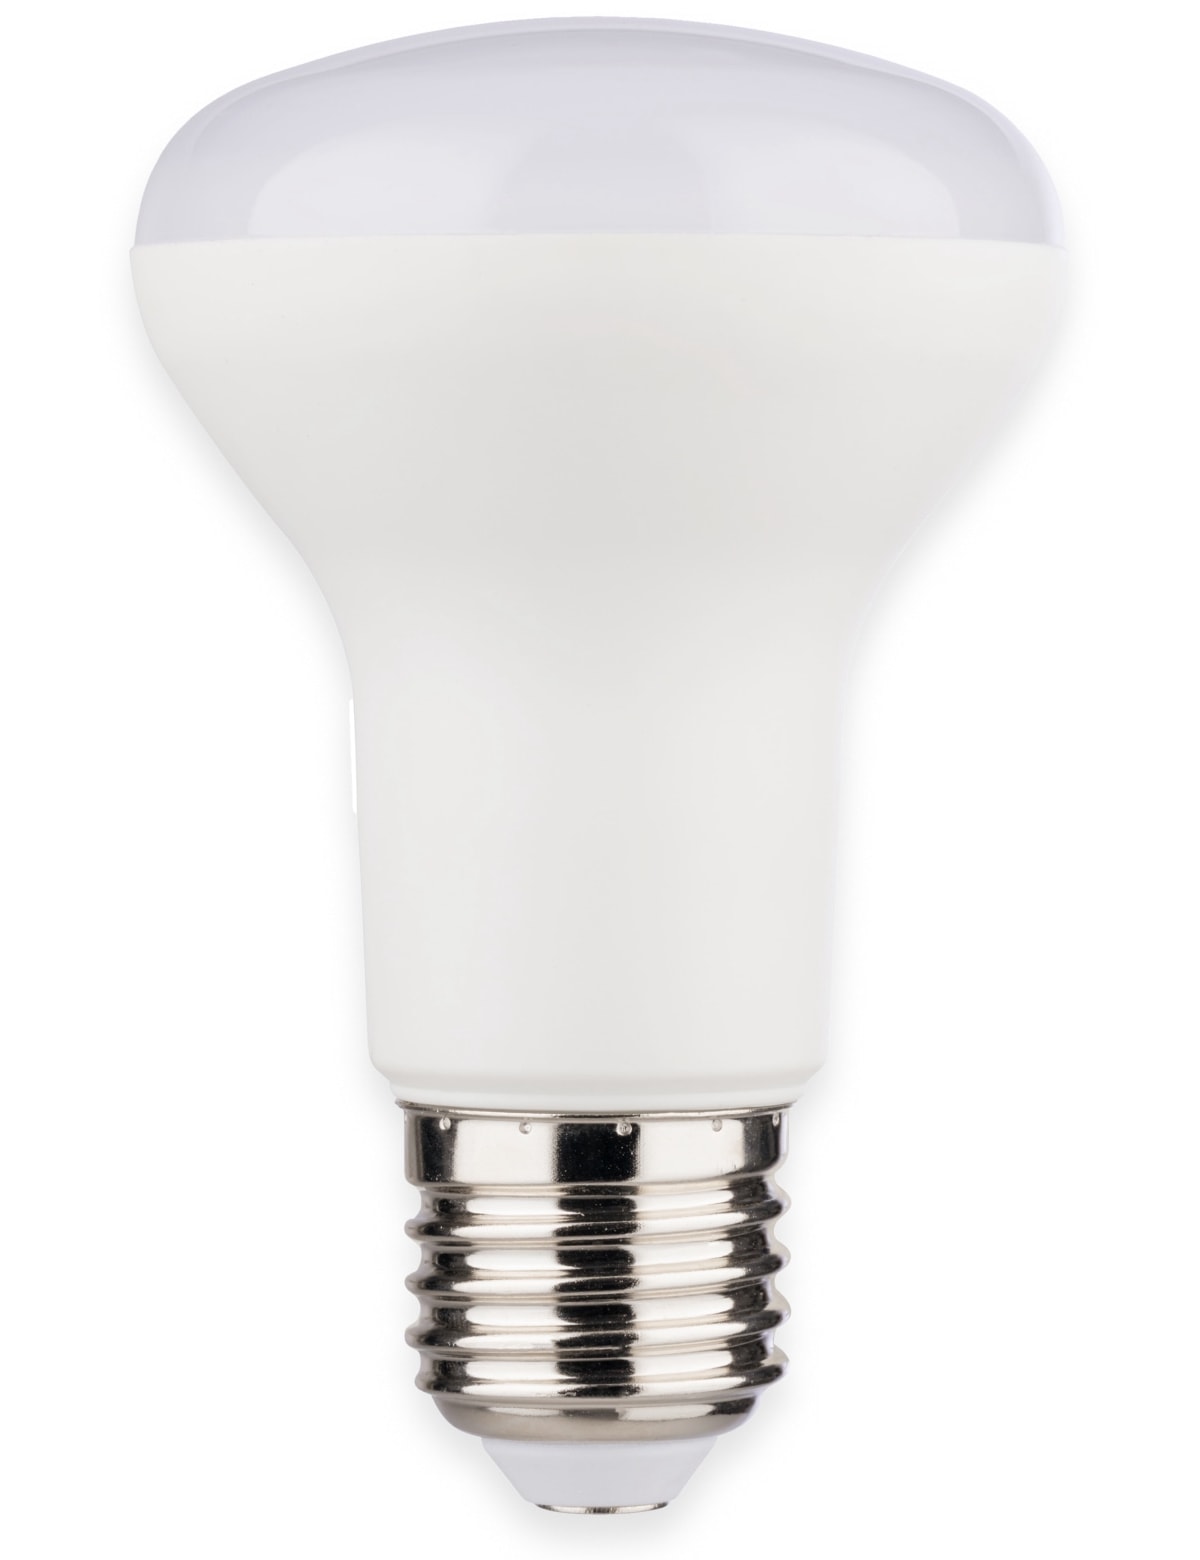 MÜLLER-LICHT LED-Lampe, Reflektorform, 400262, EEK: F R63, E27, 8.5 W, matt